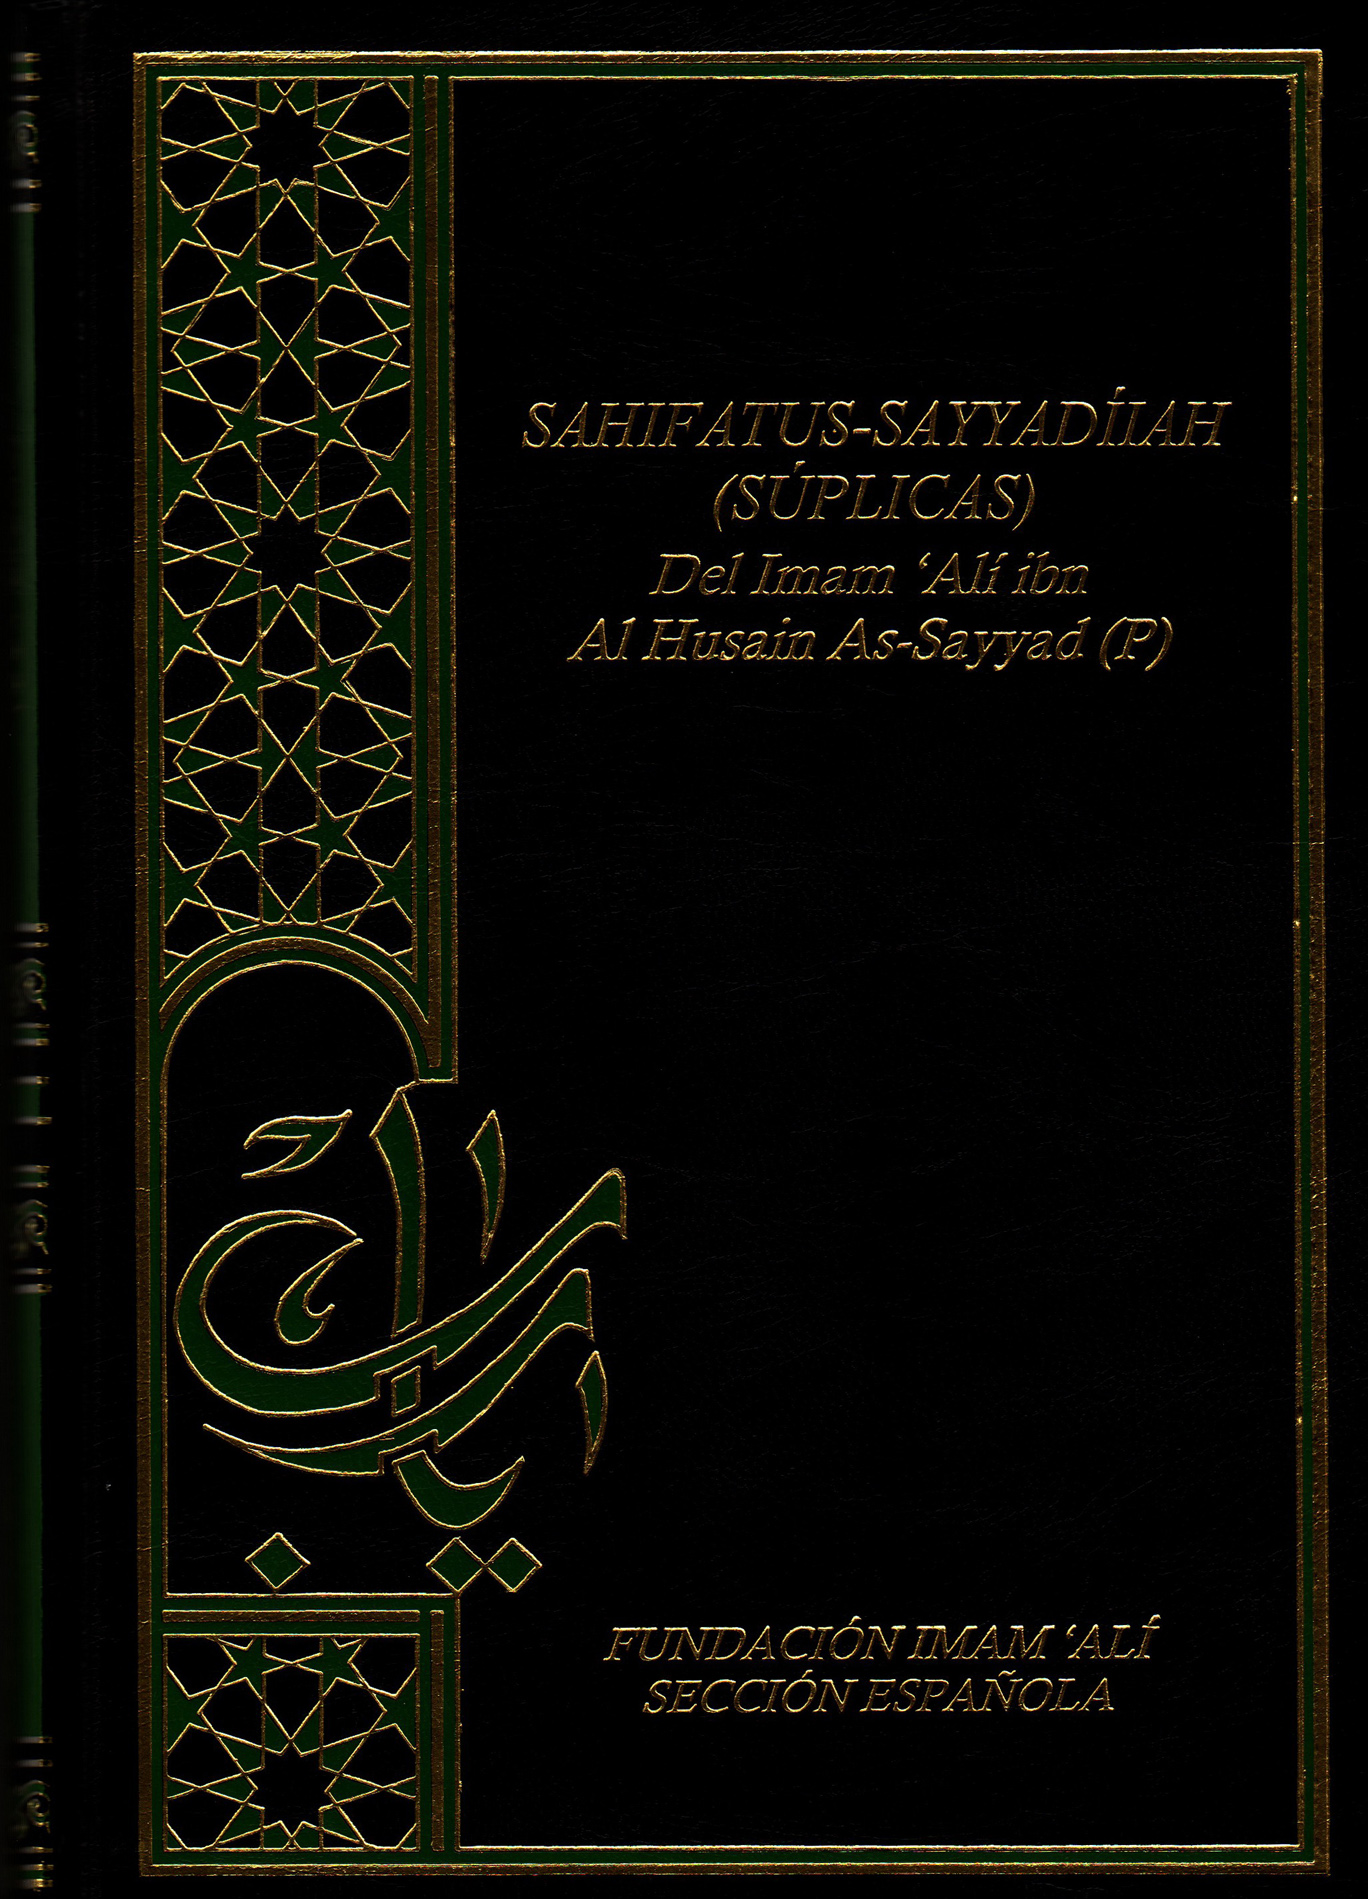 AS-SAHIFA AS-SAYYADÍIAH, Súplicas del Imam Sayyad (P)